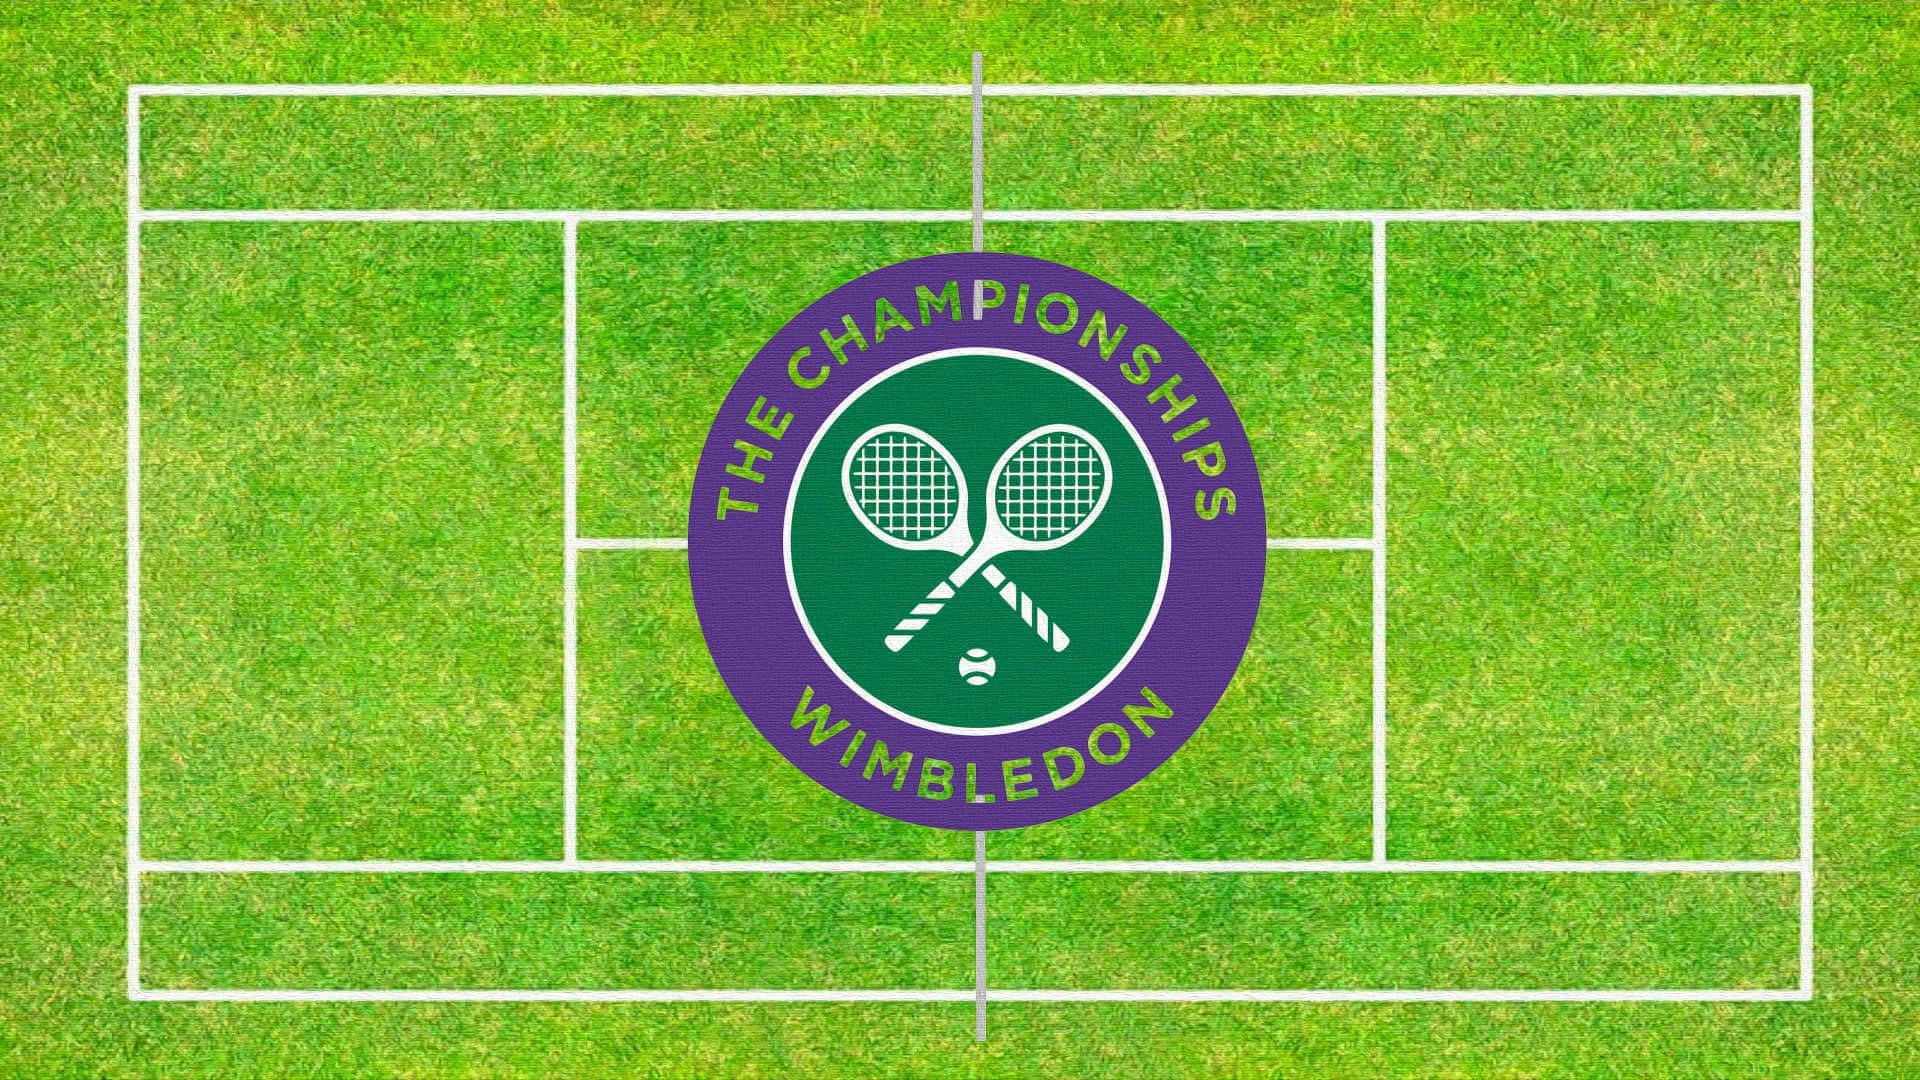 Wimbledon Tennis Logo On Grass